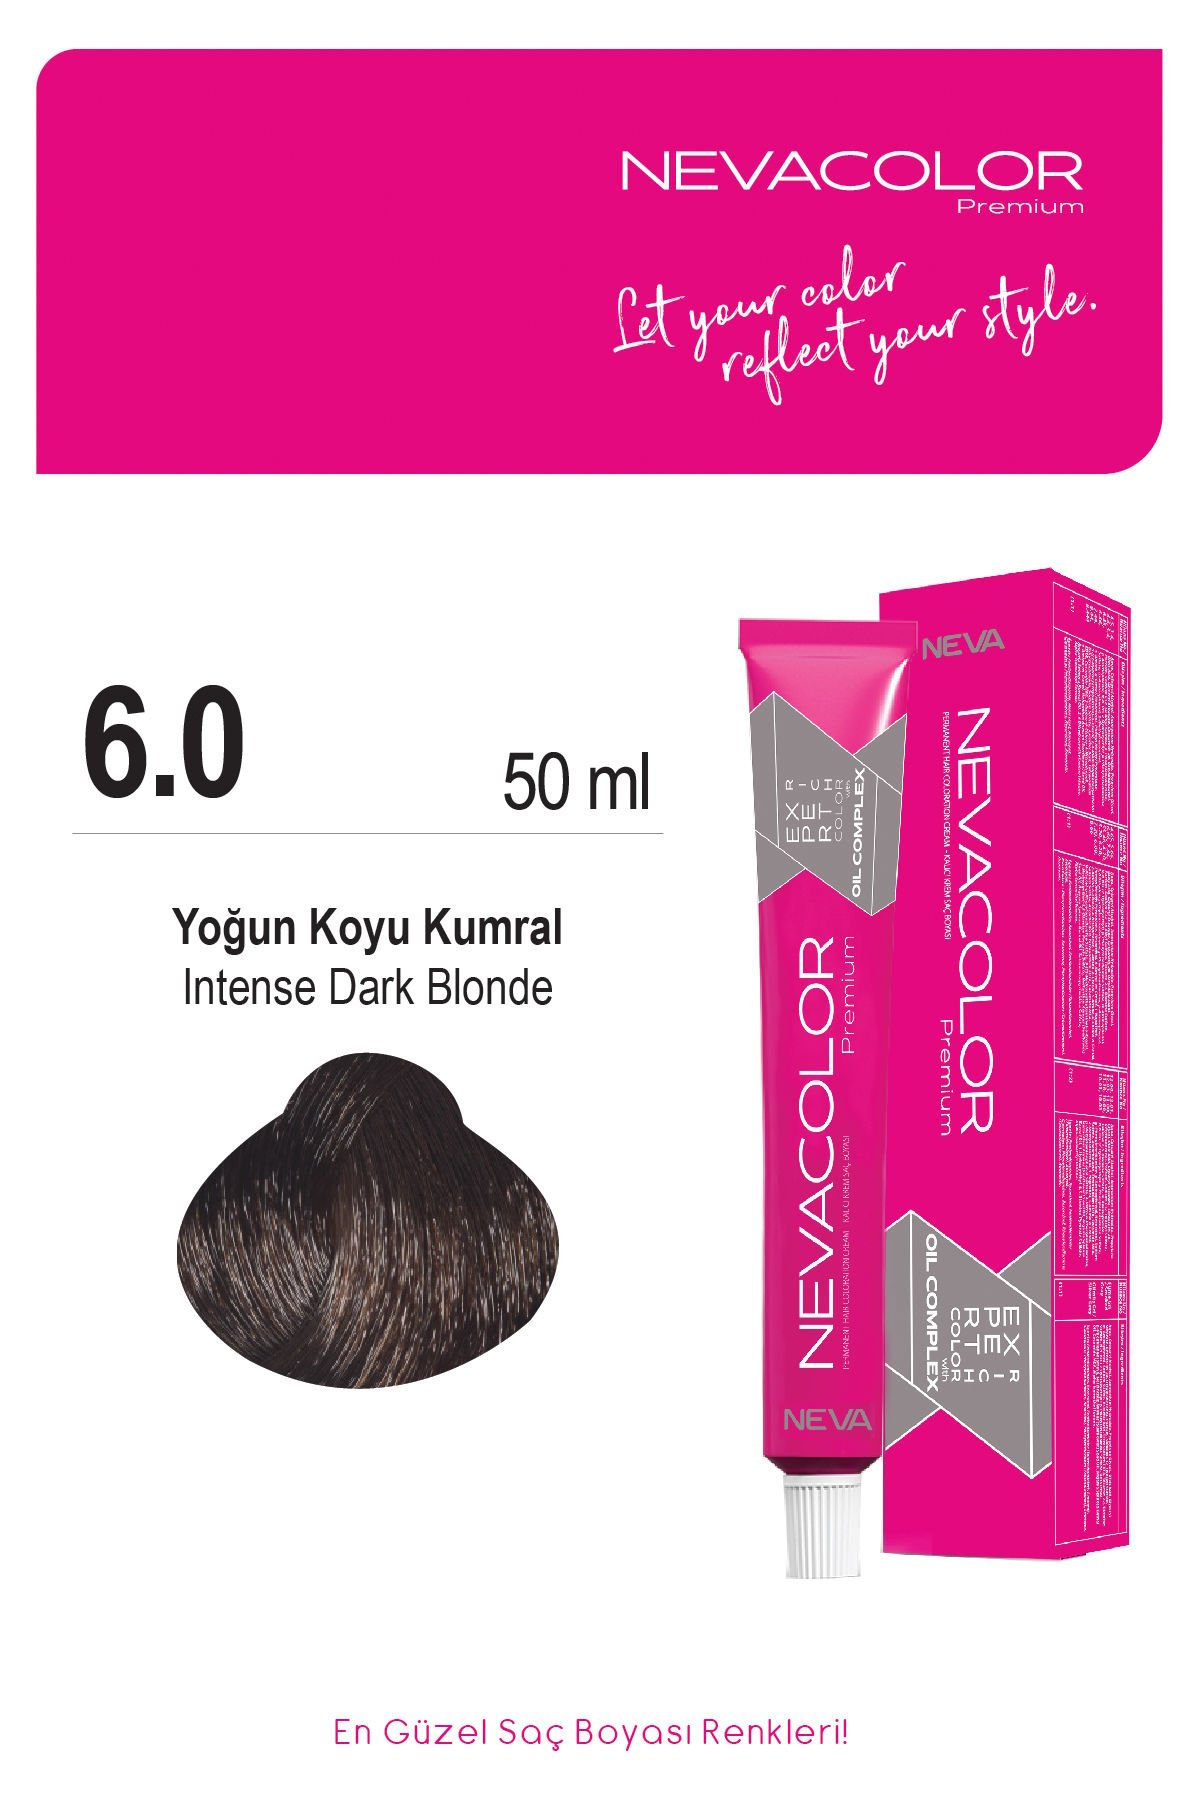 Nevacolor Premium 6.0 Yoğun Koyu Kumral - Kalıcı Krem Saç Boyası 50 g Tüp